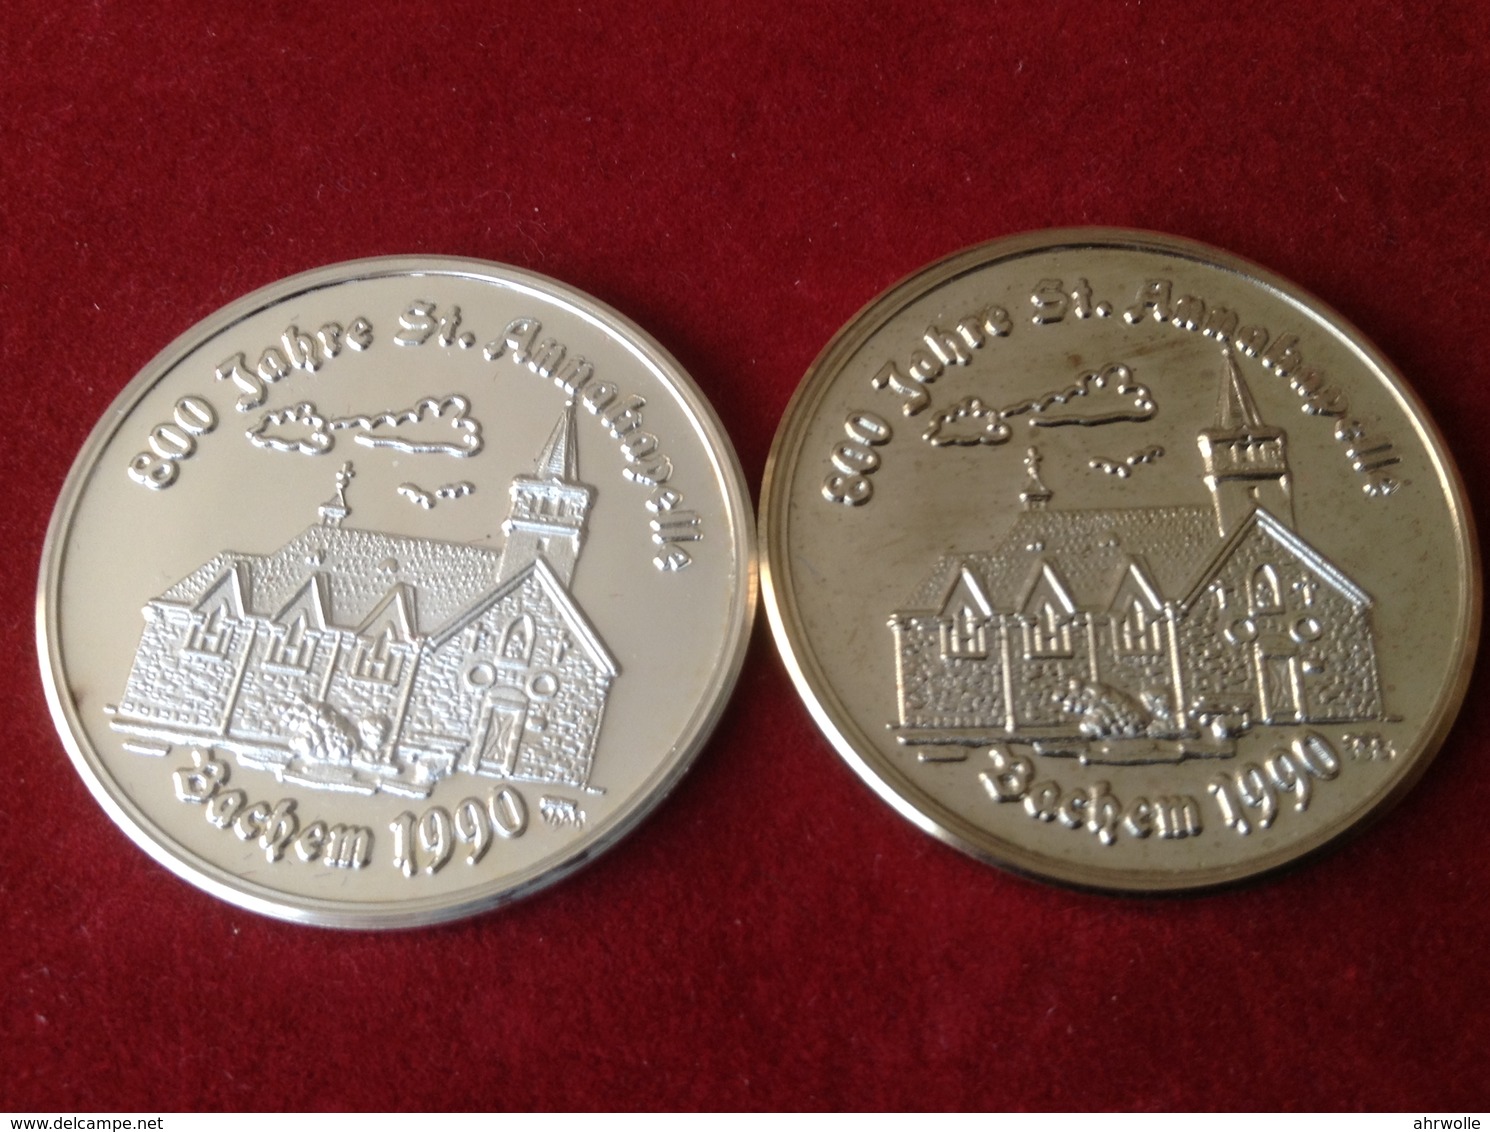 Medaillen Bachem Ahr 800 Jahre Sankt Anna Kapelle 1990 Silber - Pièces écrasées (Elongated Coins)